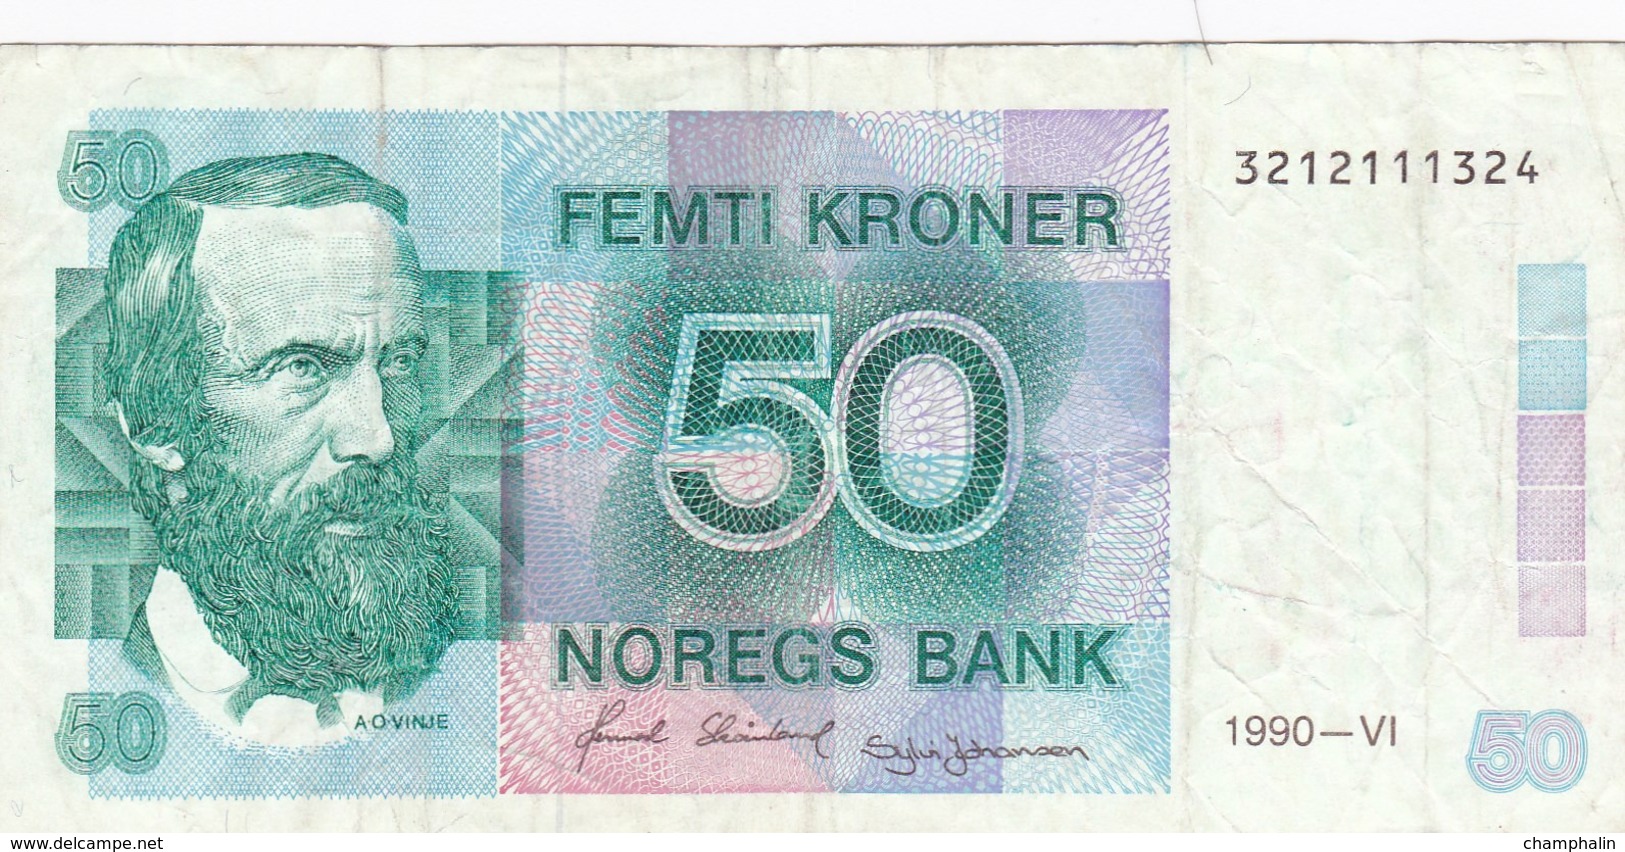 Norvège - Billet De 50 Kroner - A.O. Vinge - 1990 - P42c - Norvège